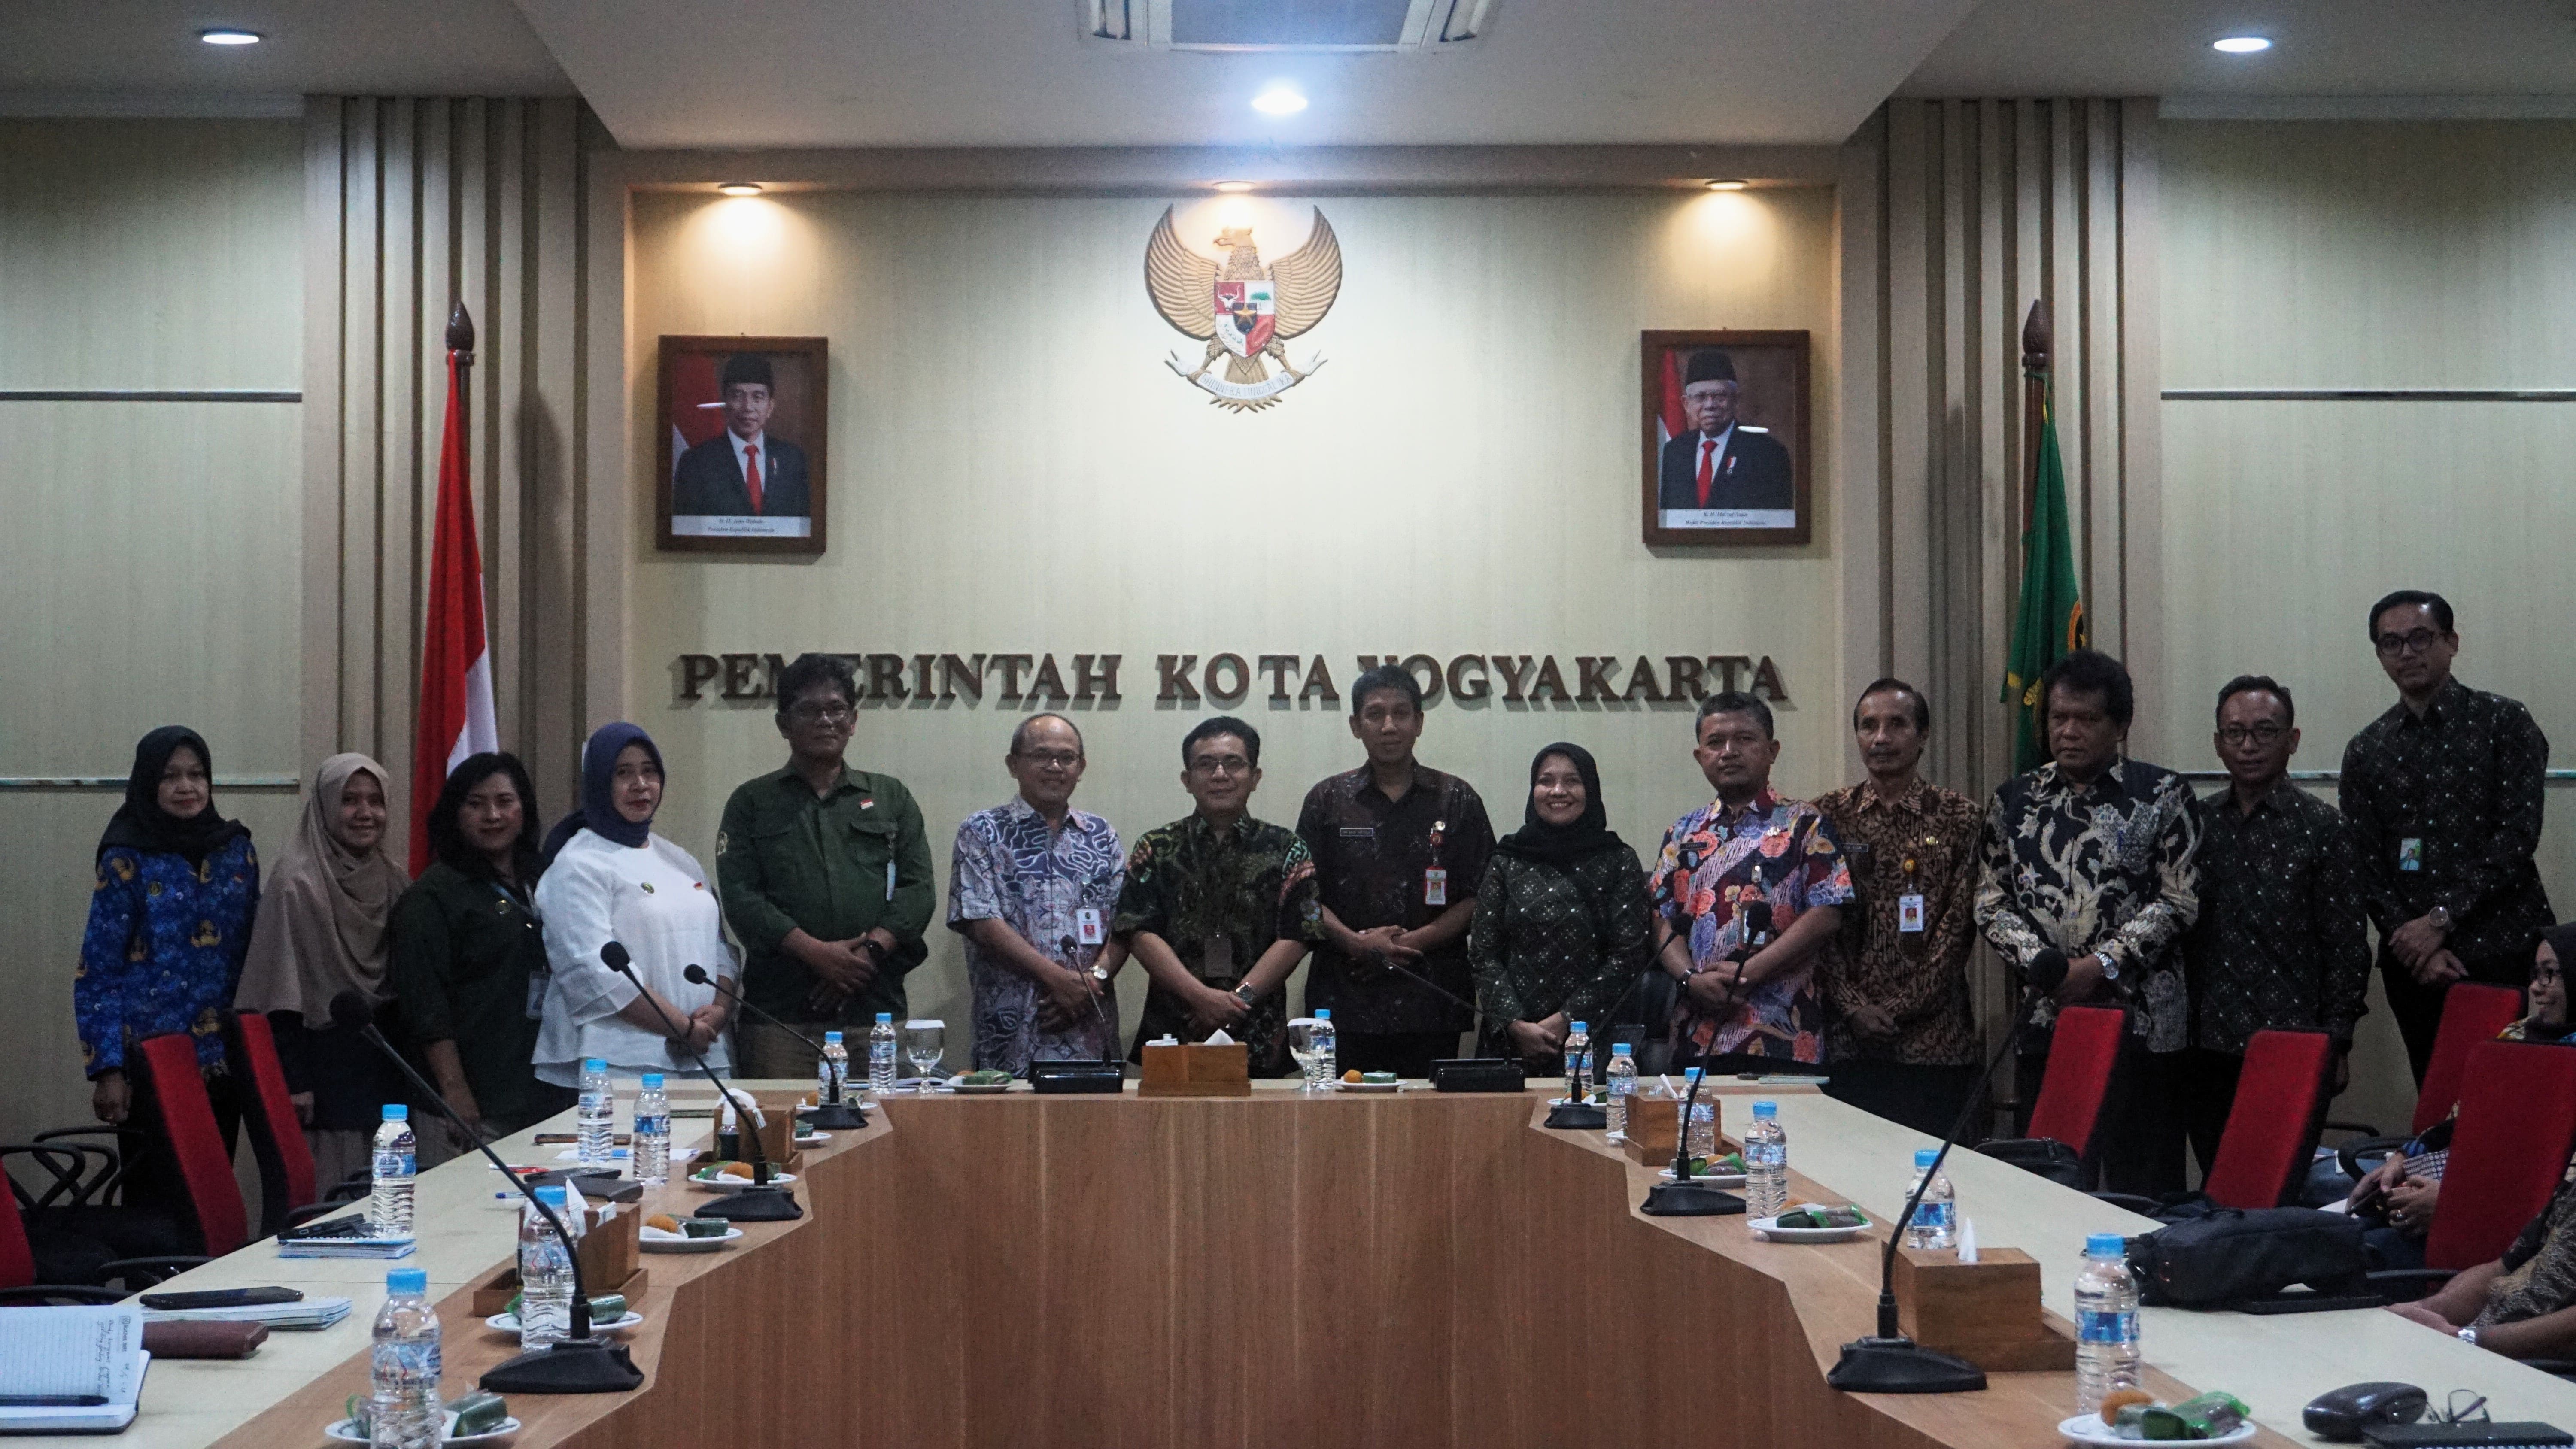 Kunjungan Kerja Pemerintah Kota Pekalongan di Pemkot Yogyakarta